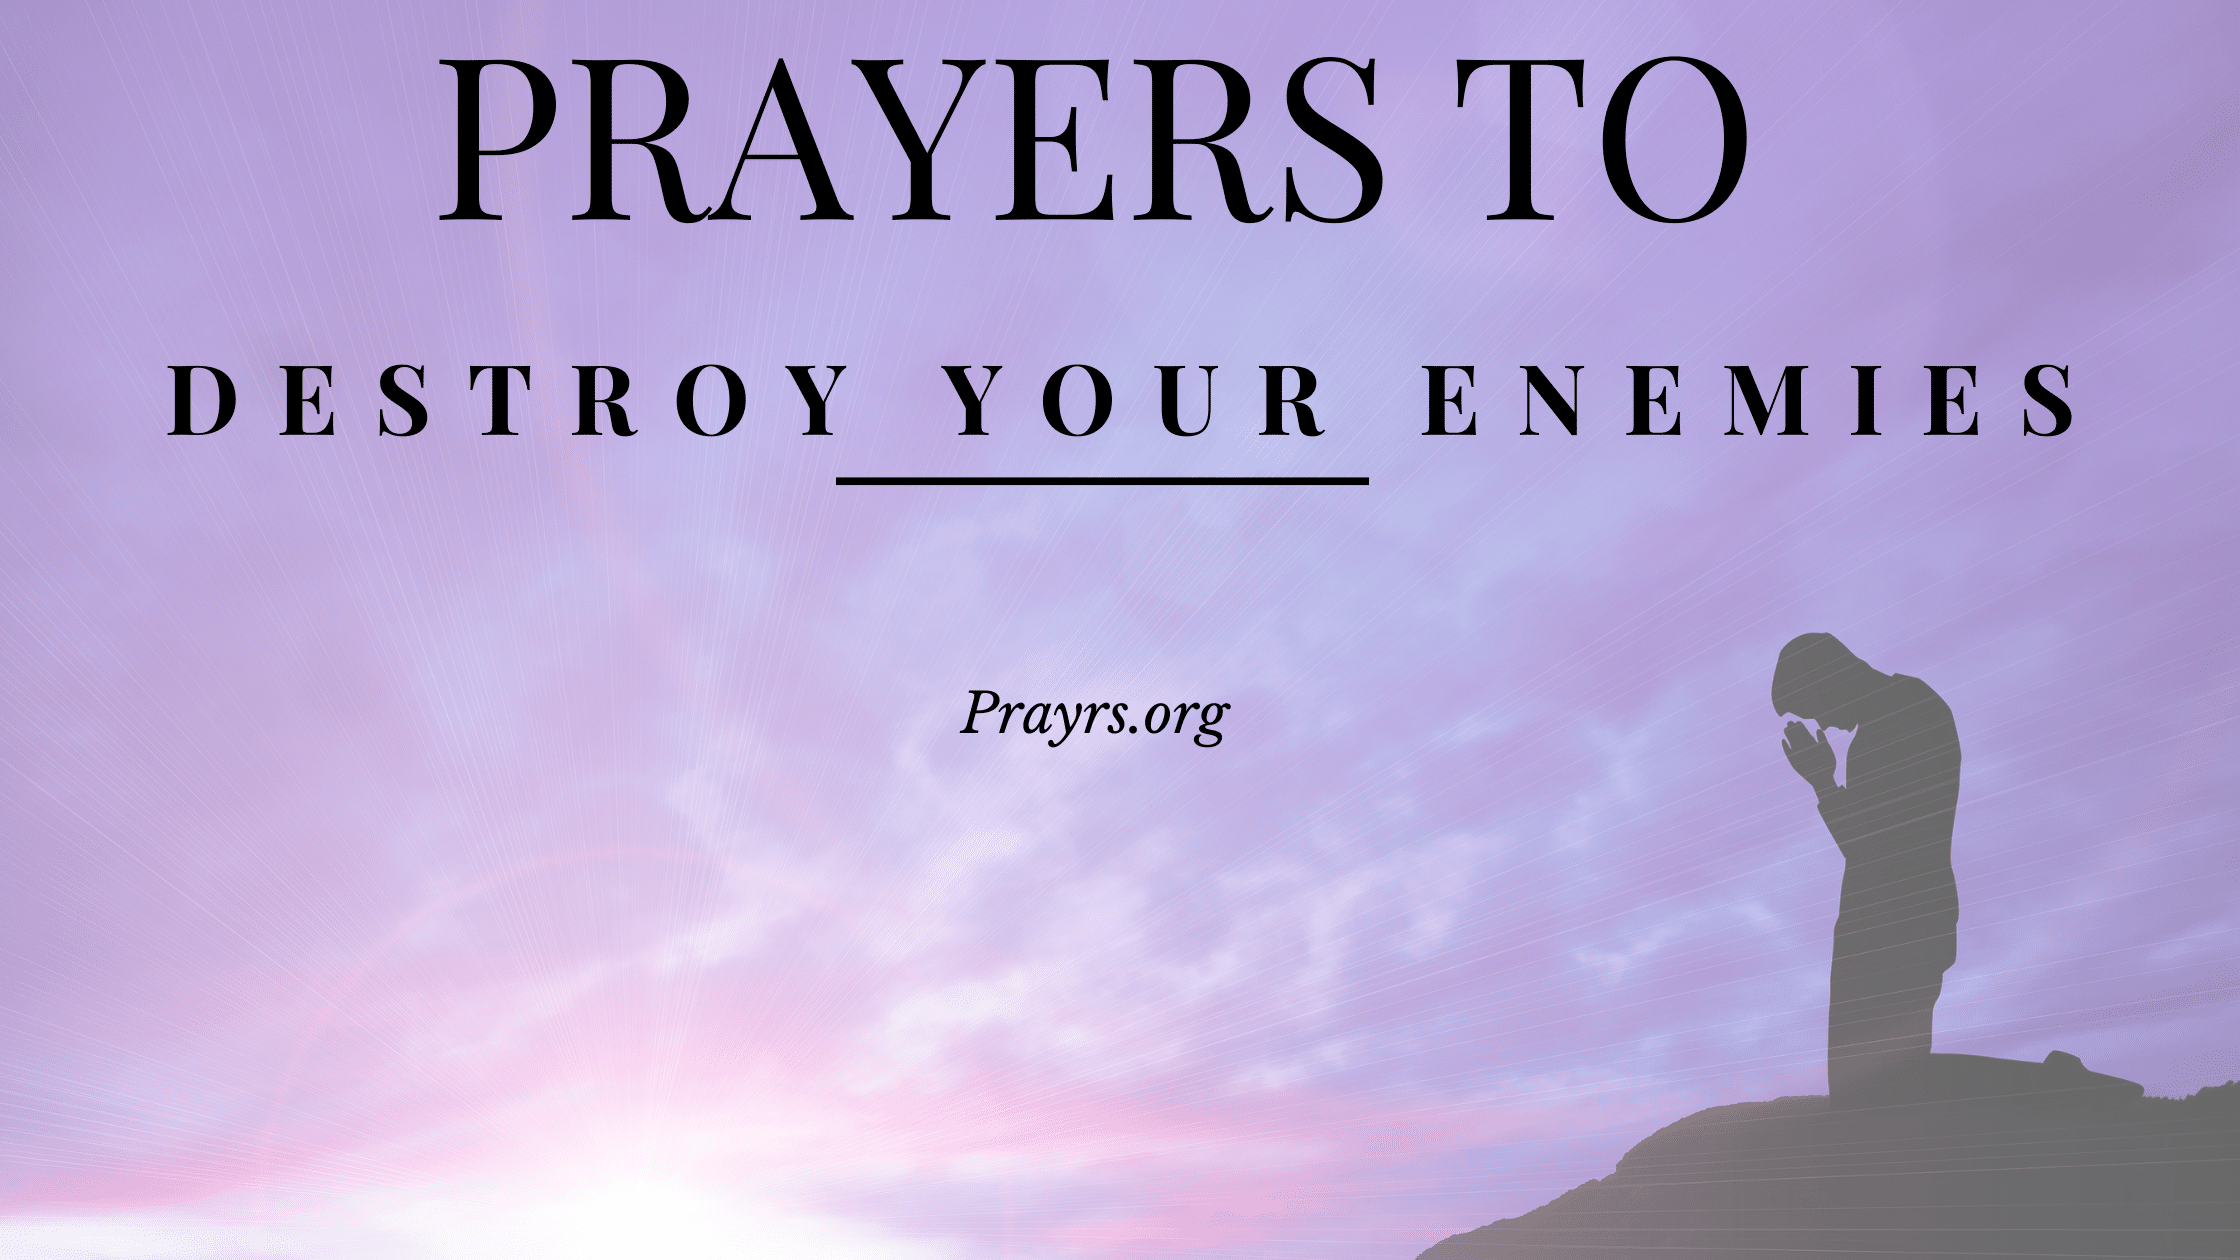 david prayer against enemies